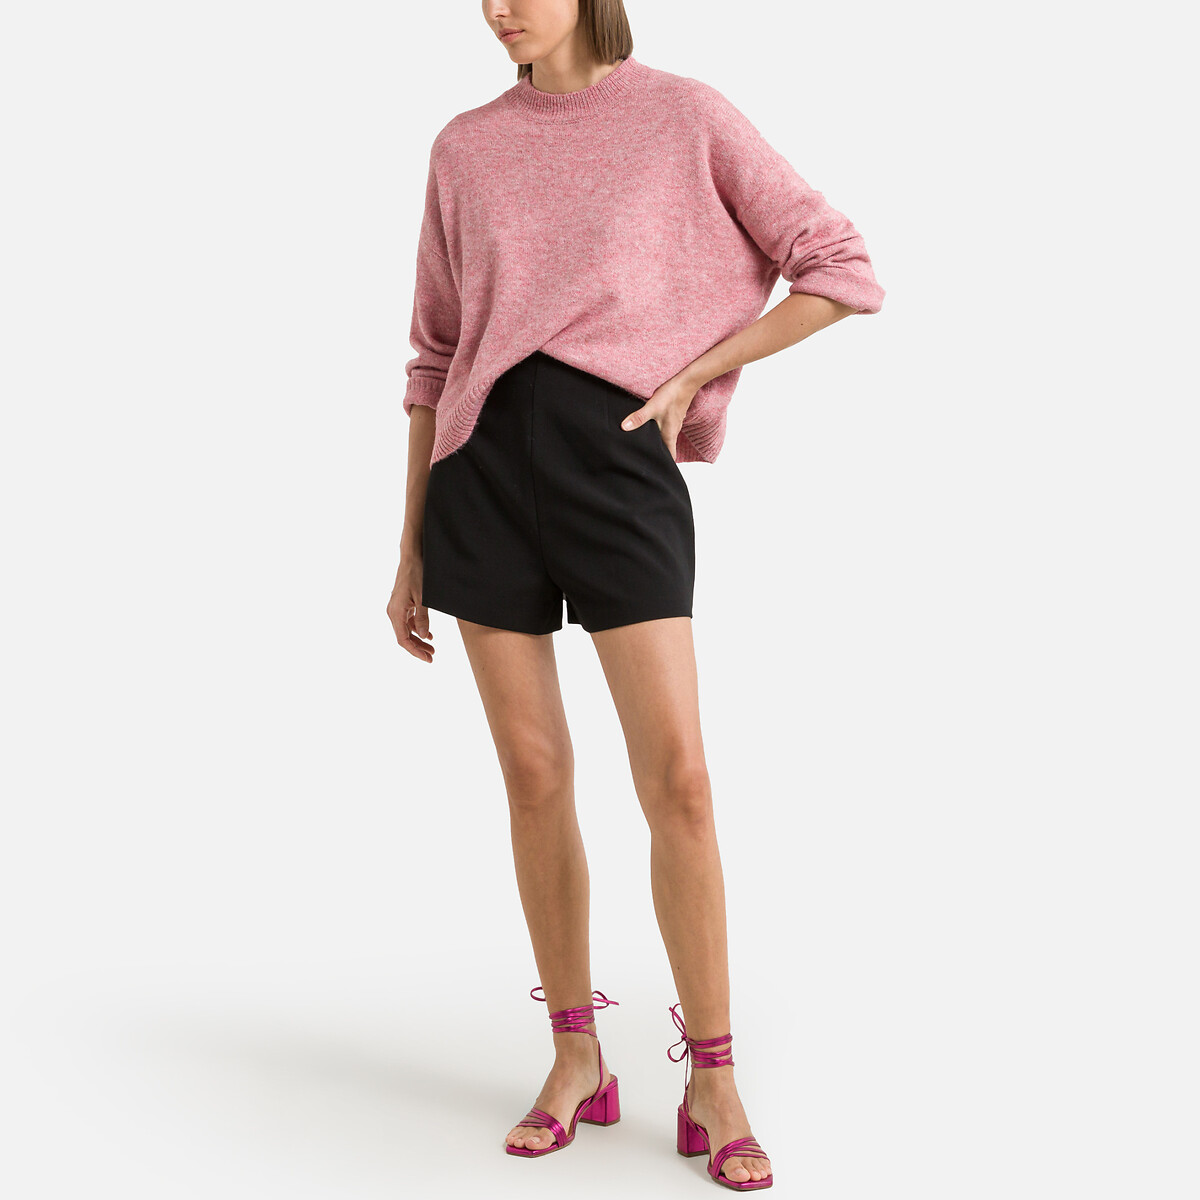 Пуловер Короткий из пышного трикотажа XS розовый LaRedoute, размер XS - фото 2